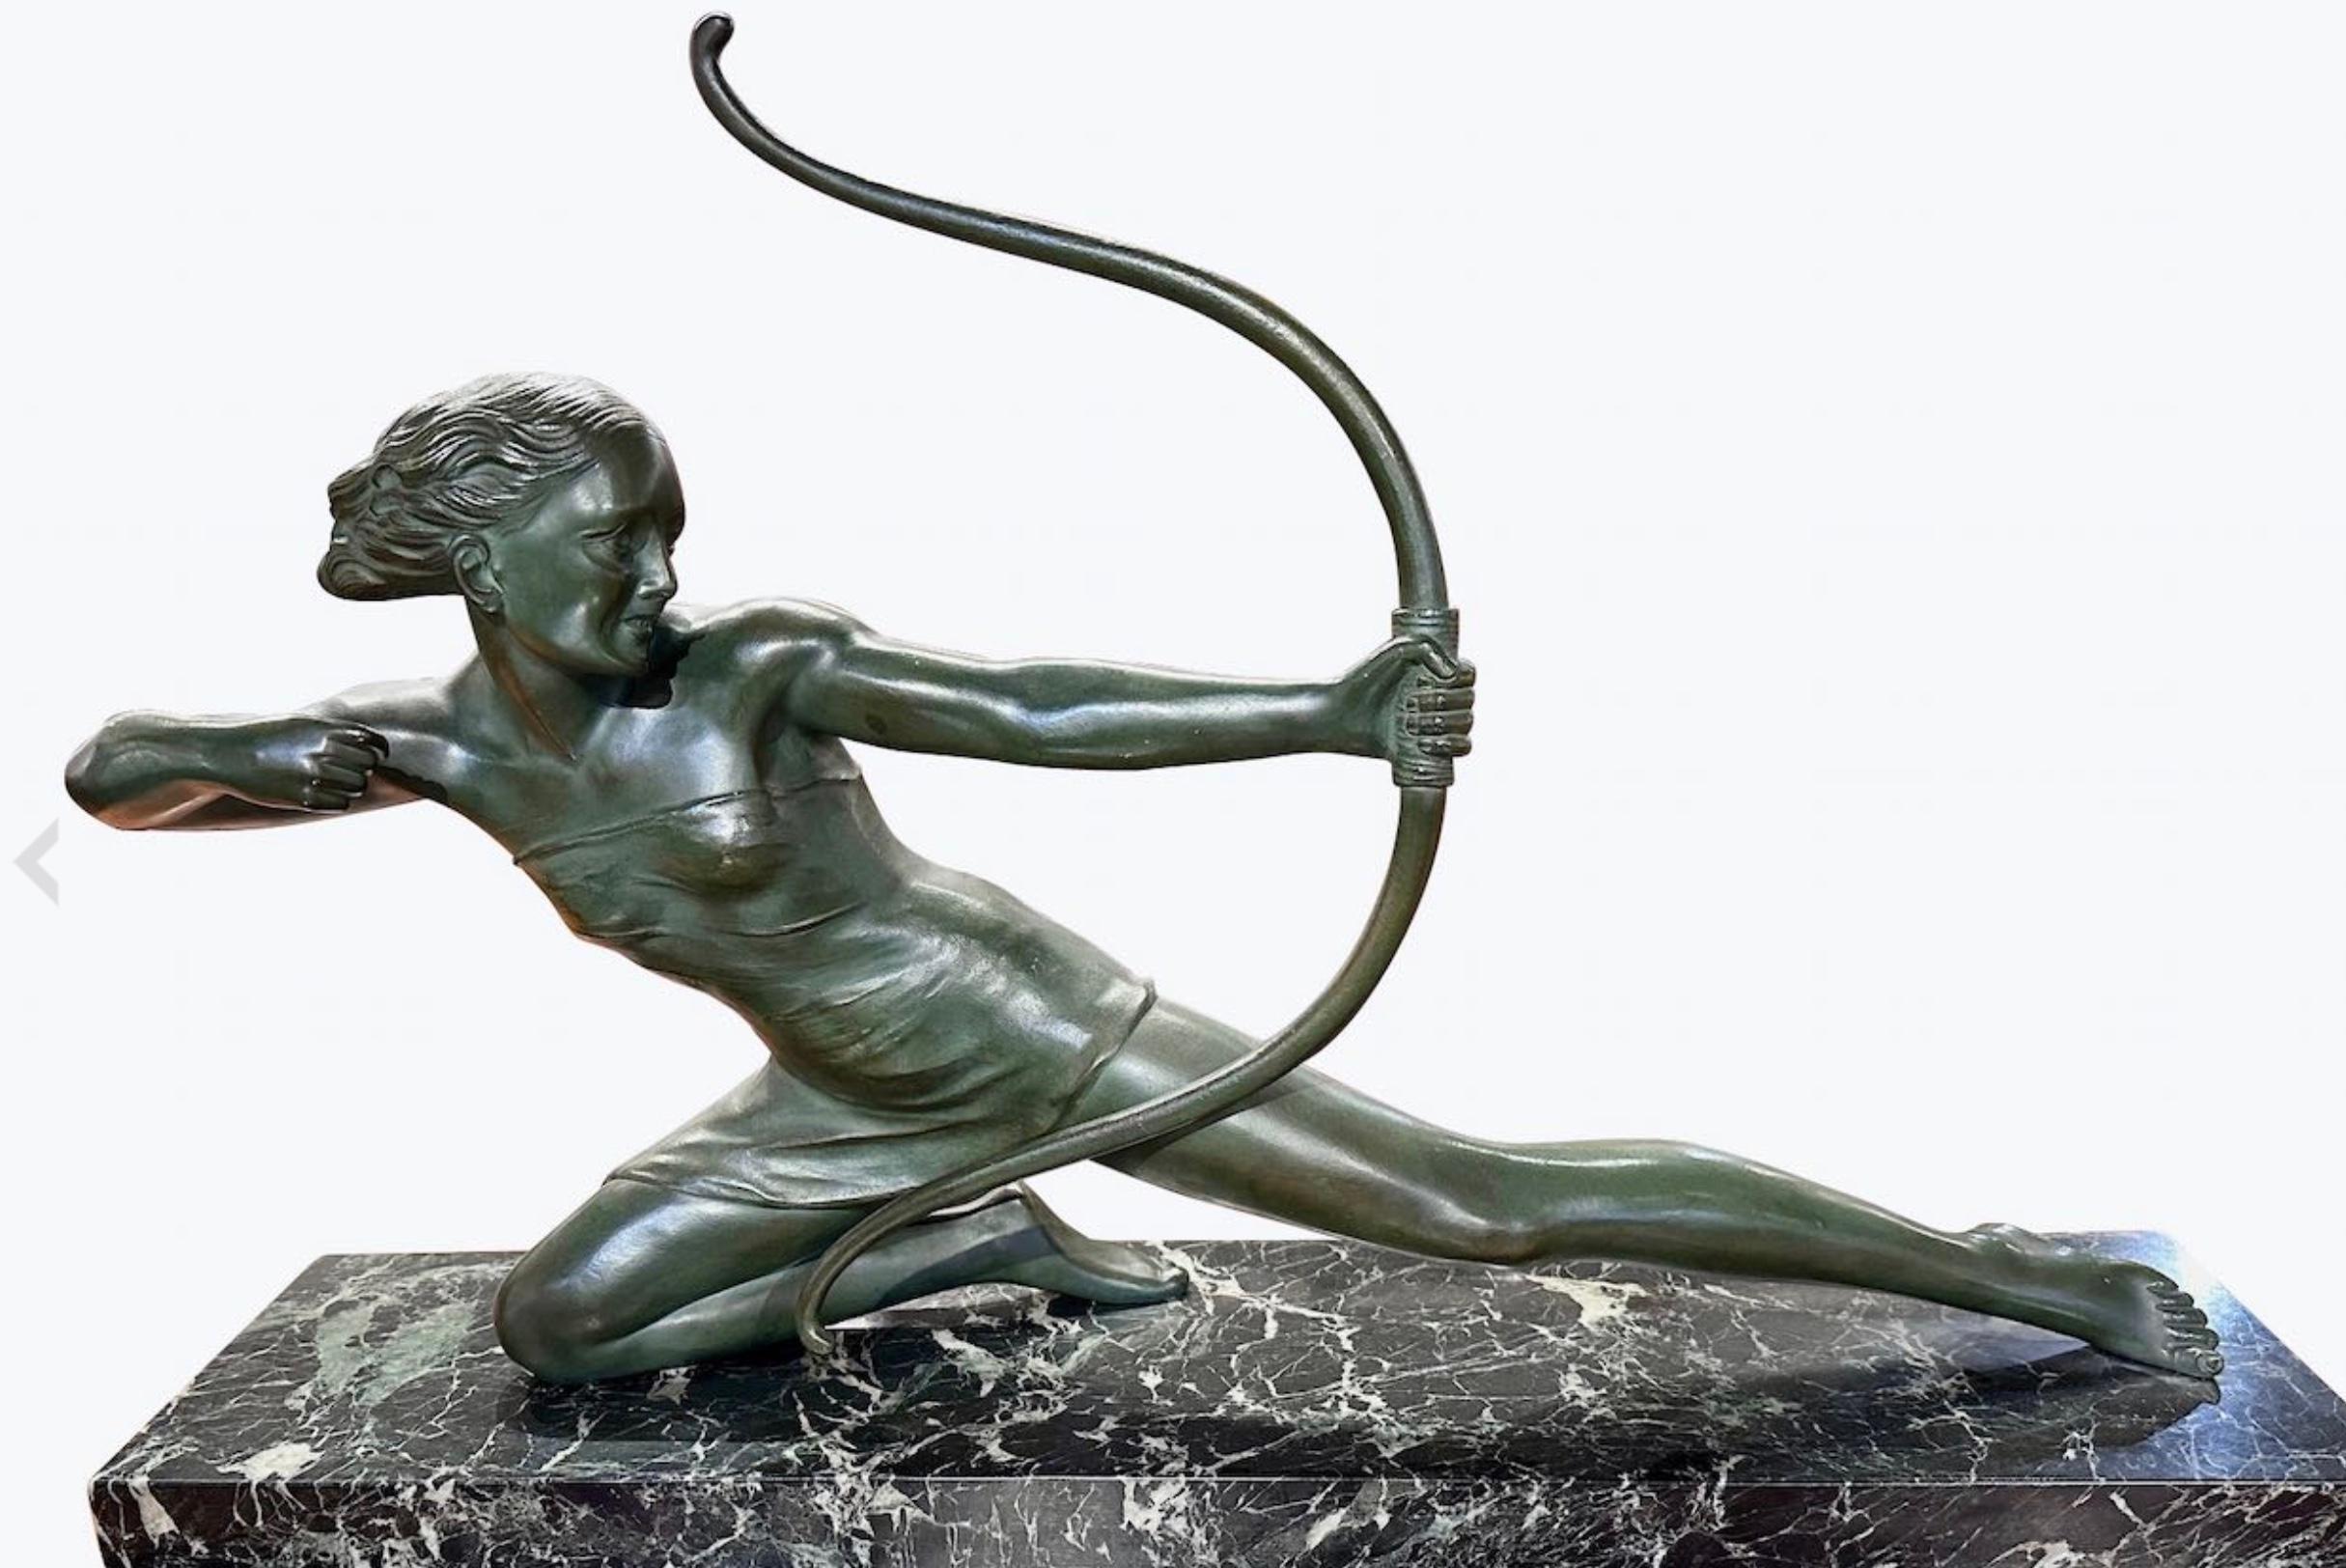 Französische Art Deco Diana die Jägerin Bronze von S. Melanie 1930er Jahre, hergestellt in den 1930er Jahren, steht als ein Zeugnis für die künstlerische Brillanz der Epoche. Diese außergewöhnliche Skulptur strahlt durch ihre Größe, ihr Gewicht und